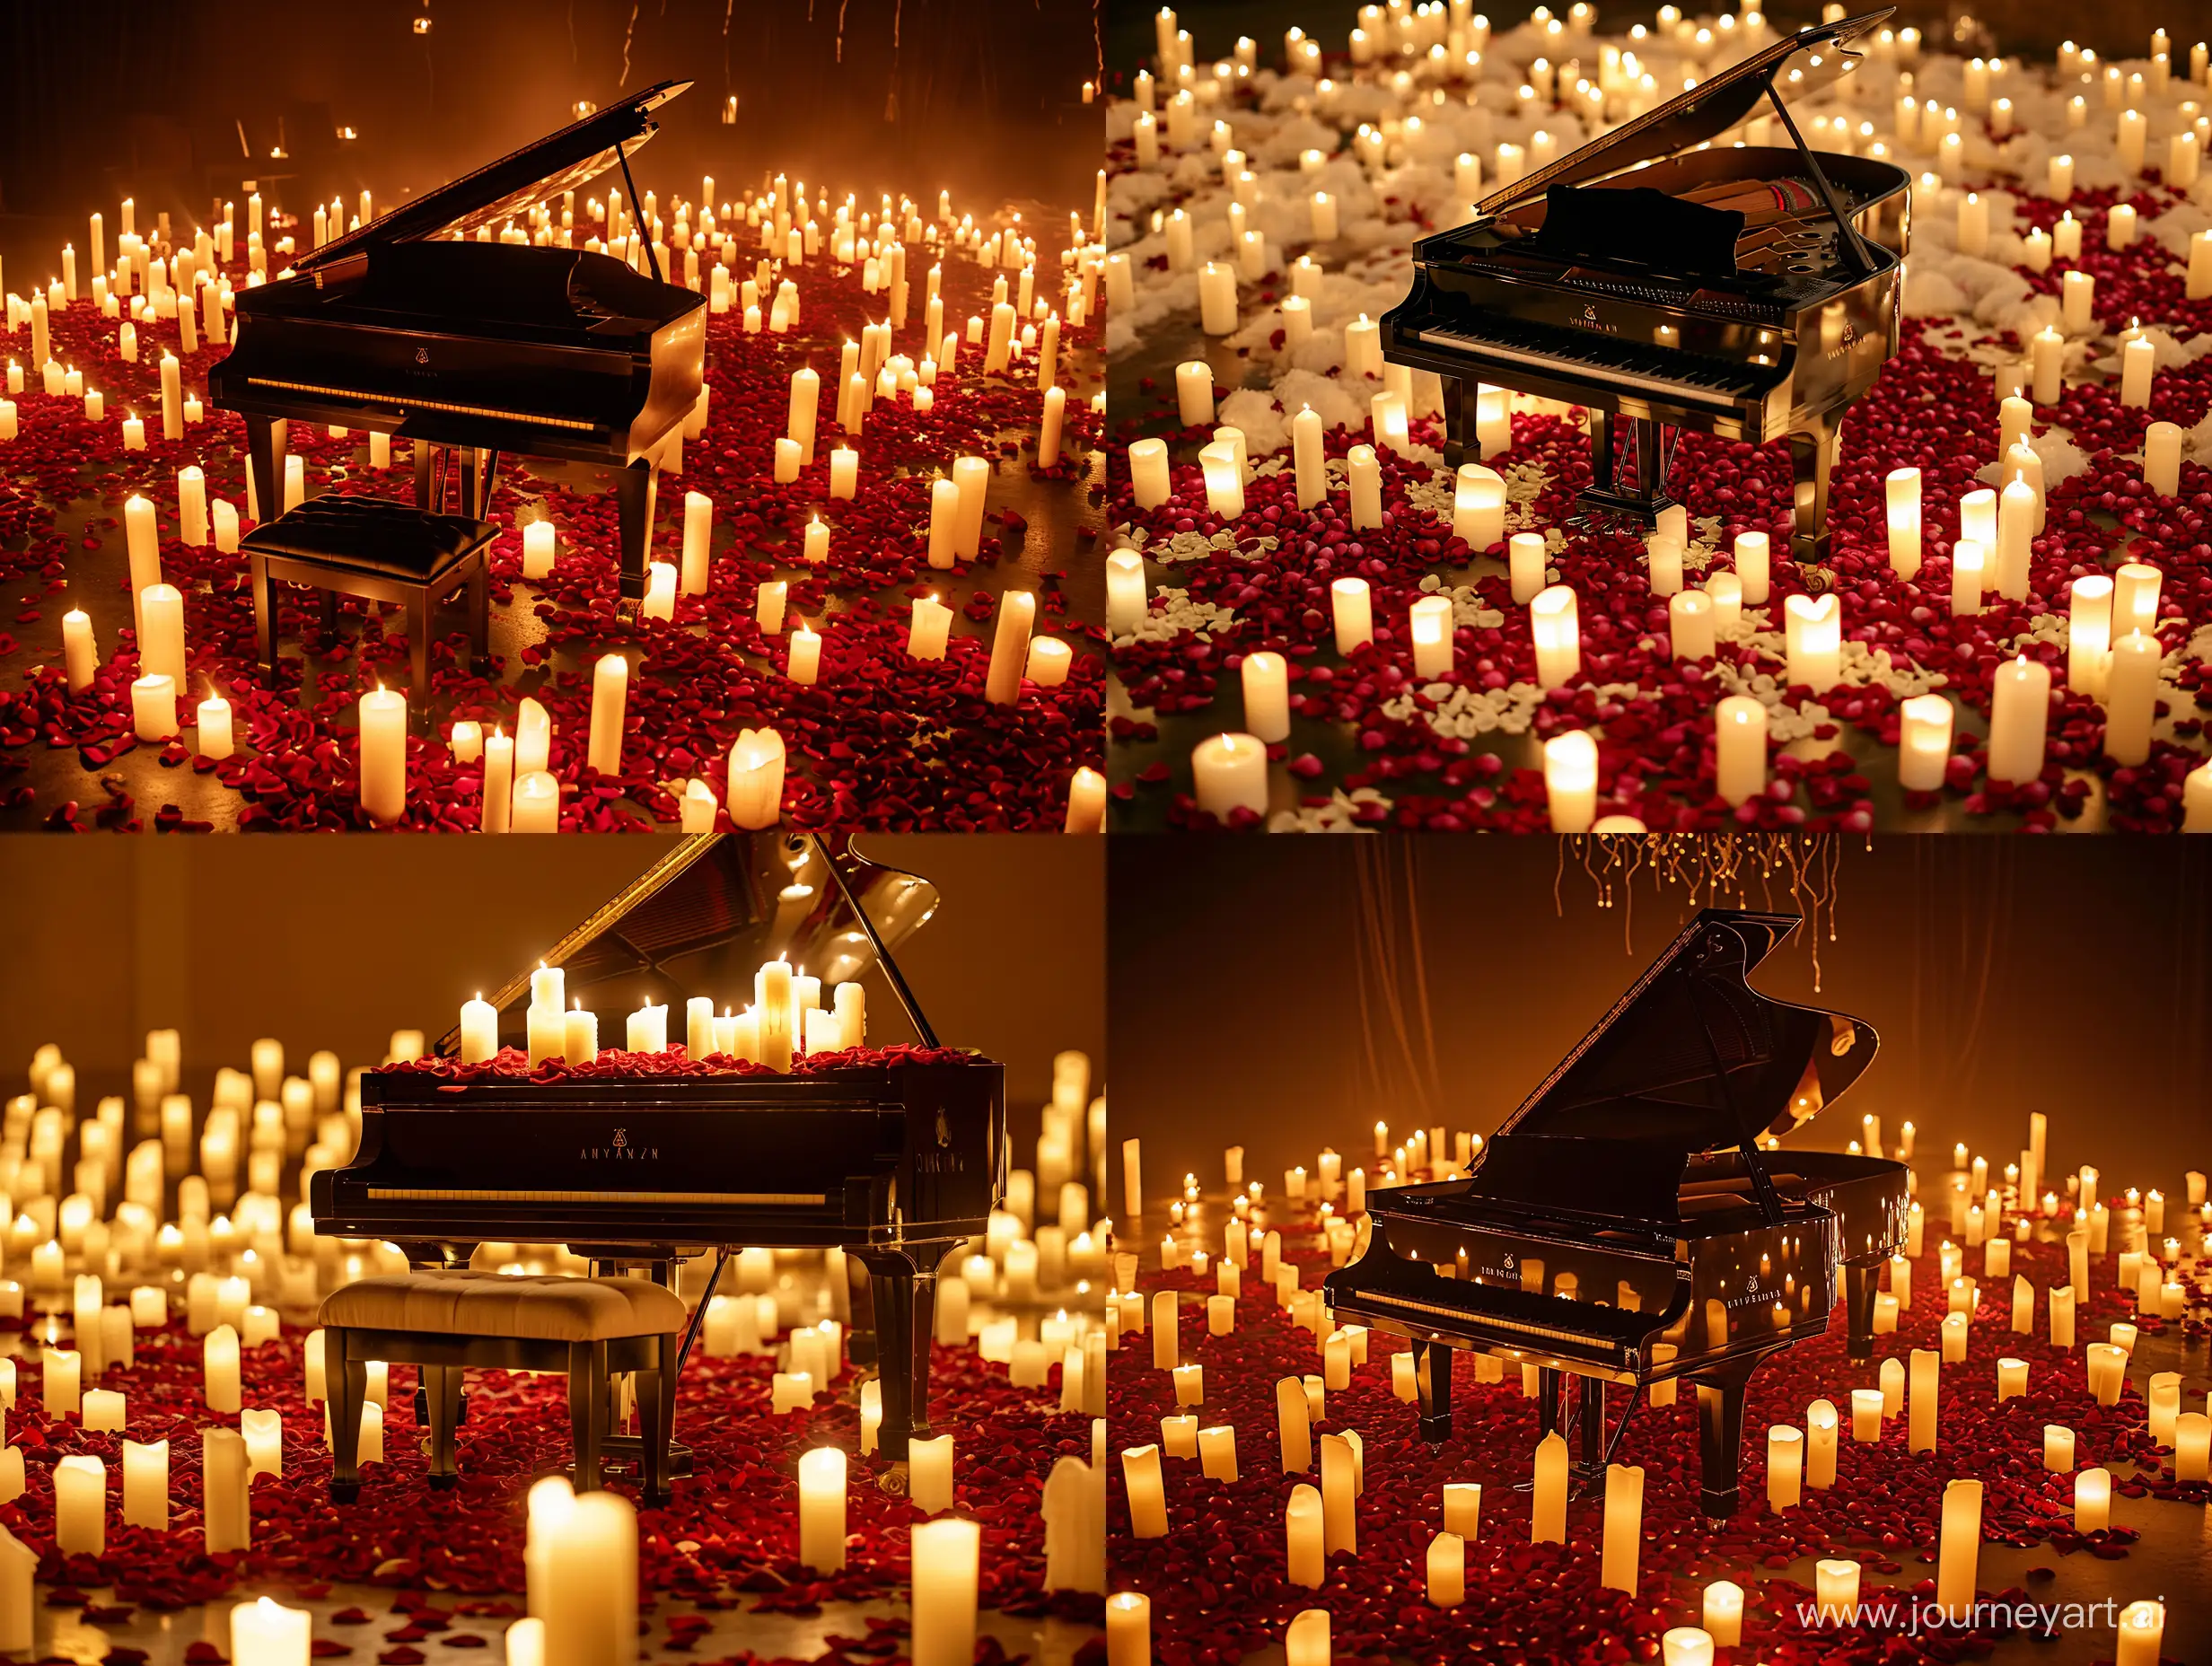 рояль при тысяче свечей и лепестков роз